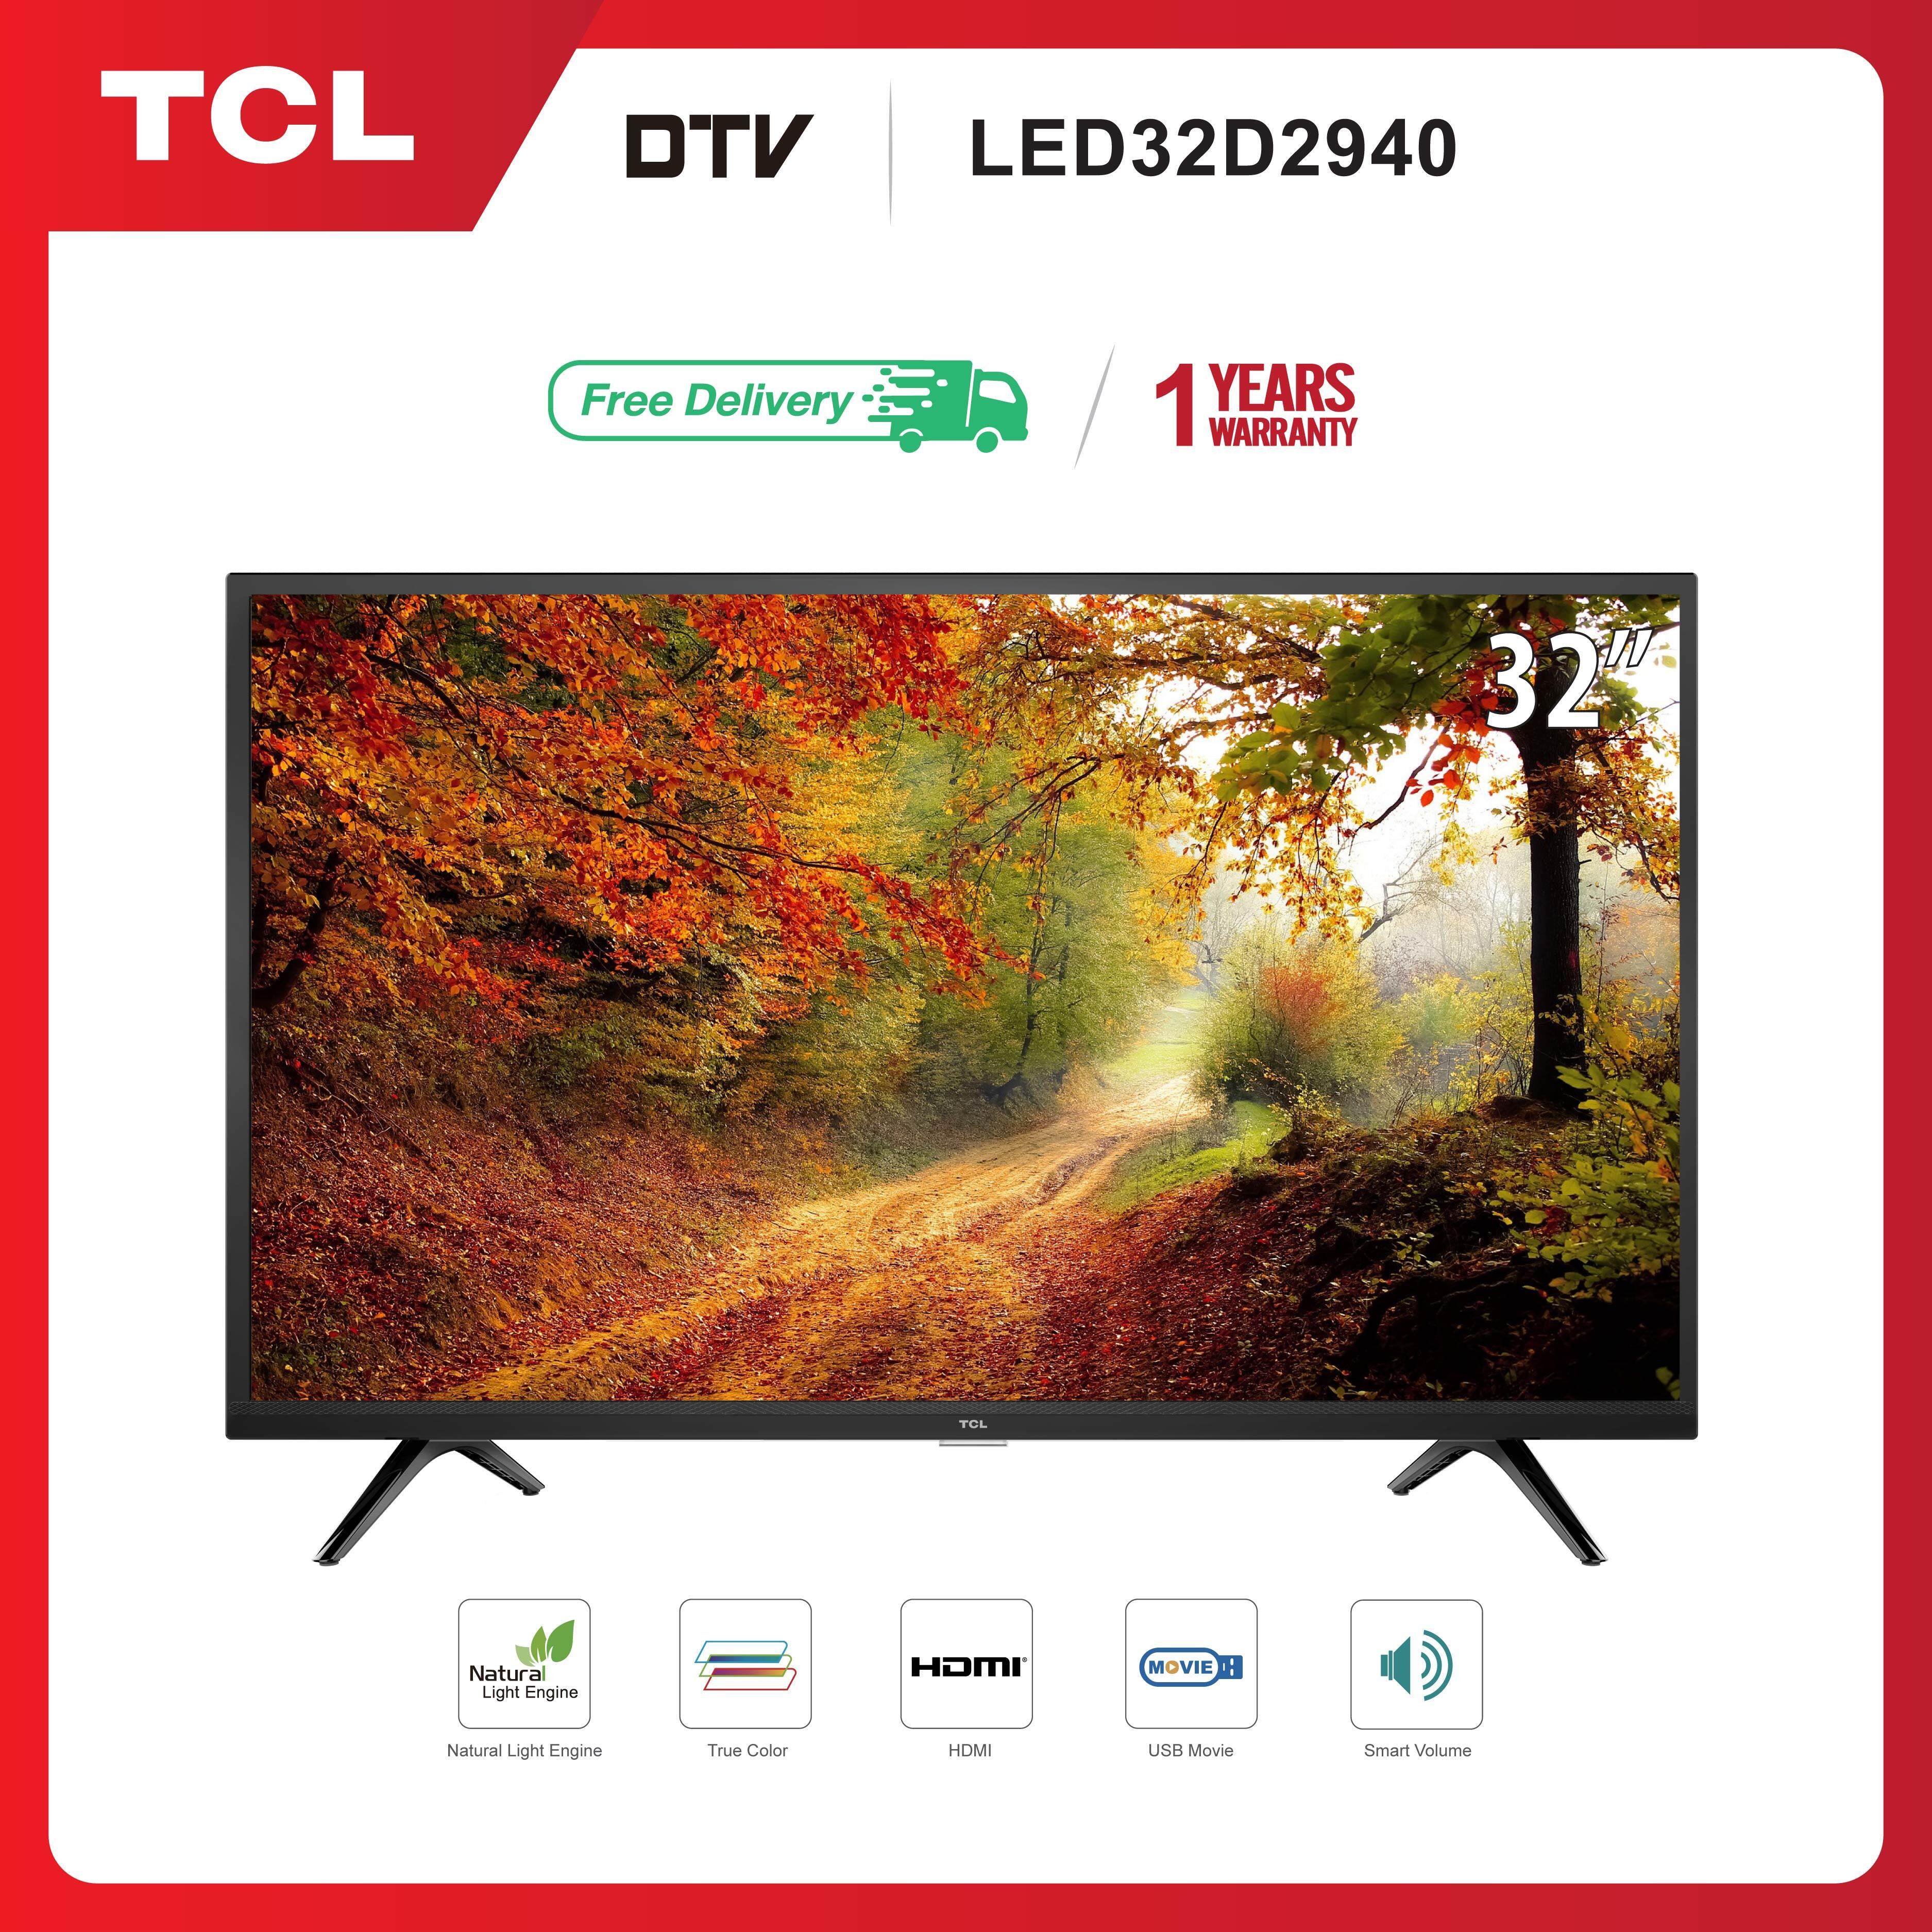 TCL ทีวี 32 นิ้ว LED HD 720P  (รุ่น 32D2940) -DVB-T2- AV In-HDMI-USB-Slim ดิจิตอลทีวี